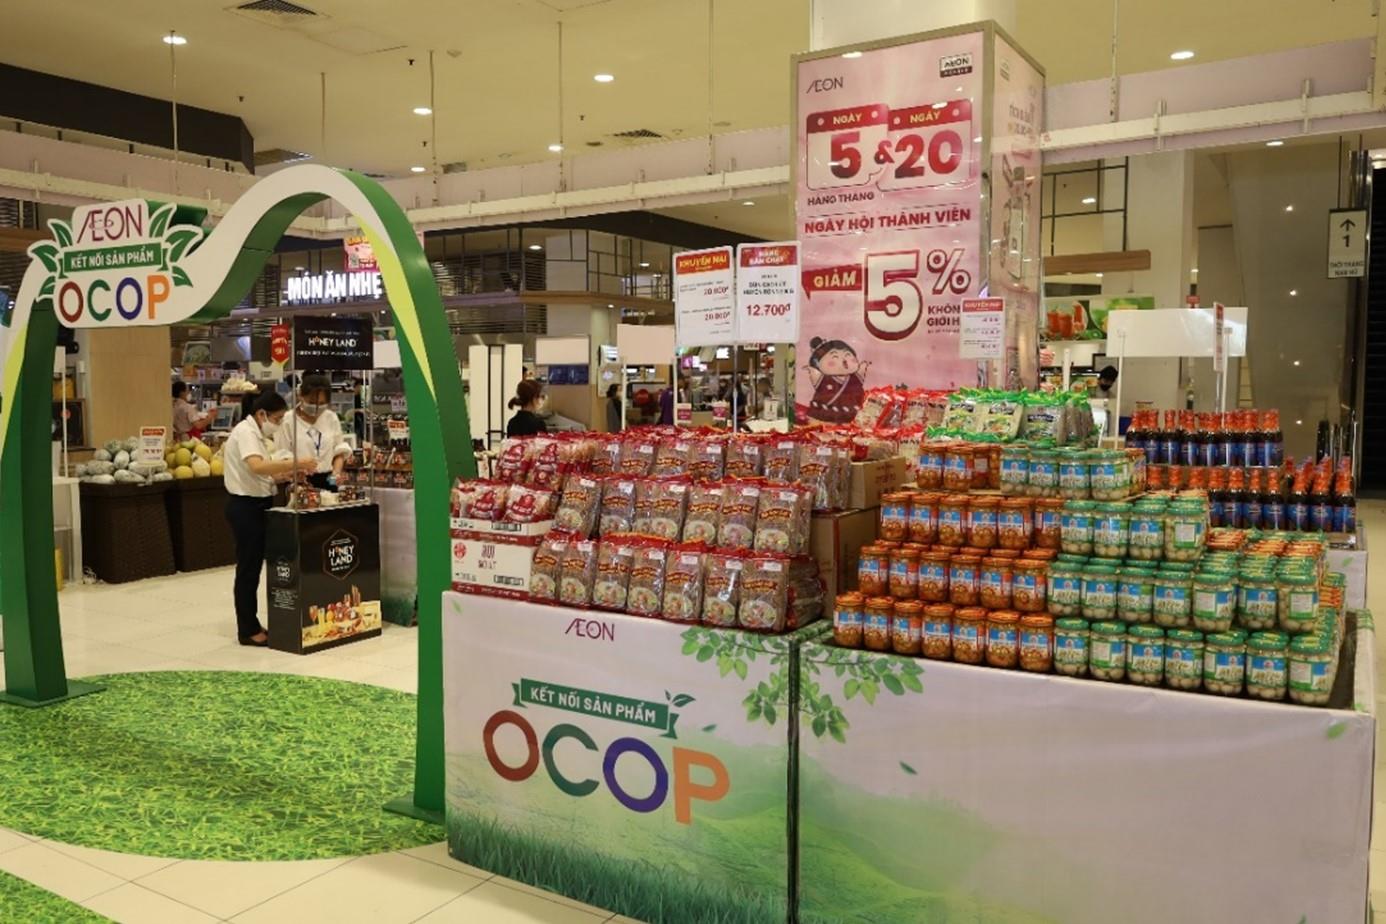 AEON Việt Nam “Kết nối sản phẩm OCOP 2023” đến người tiêu dùng - Ảnh 1.